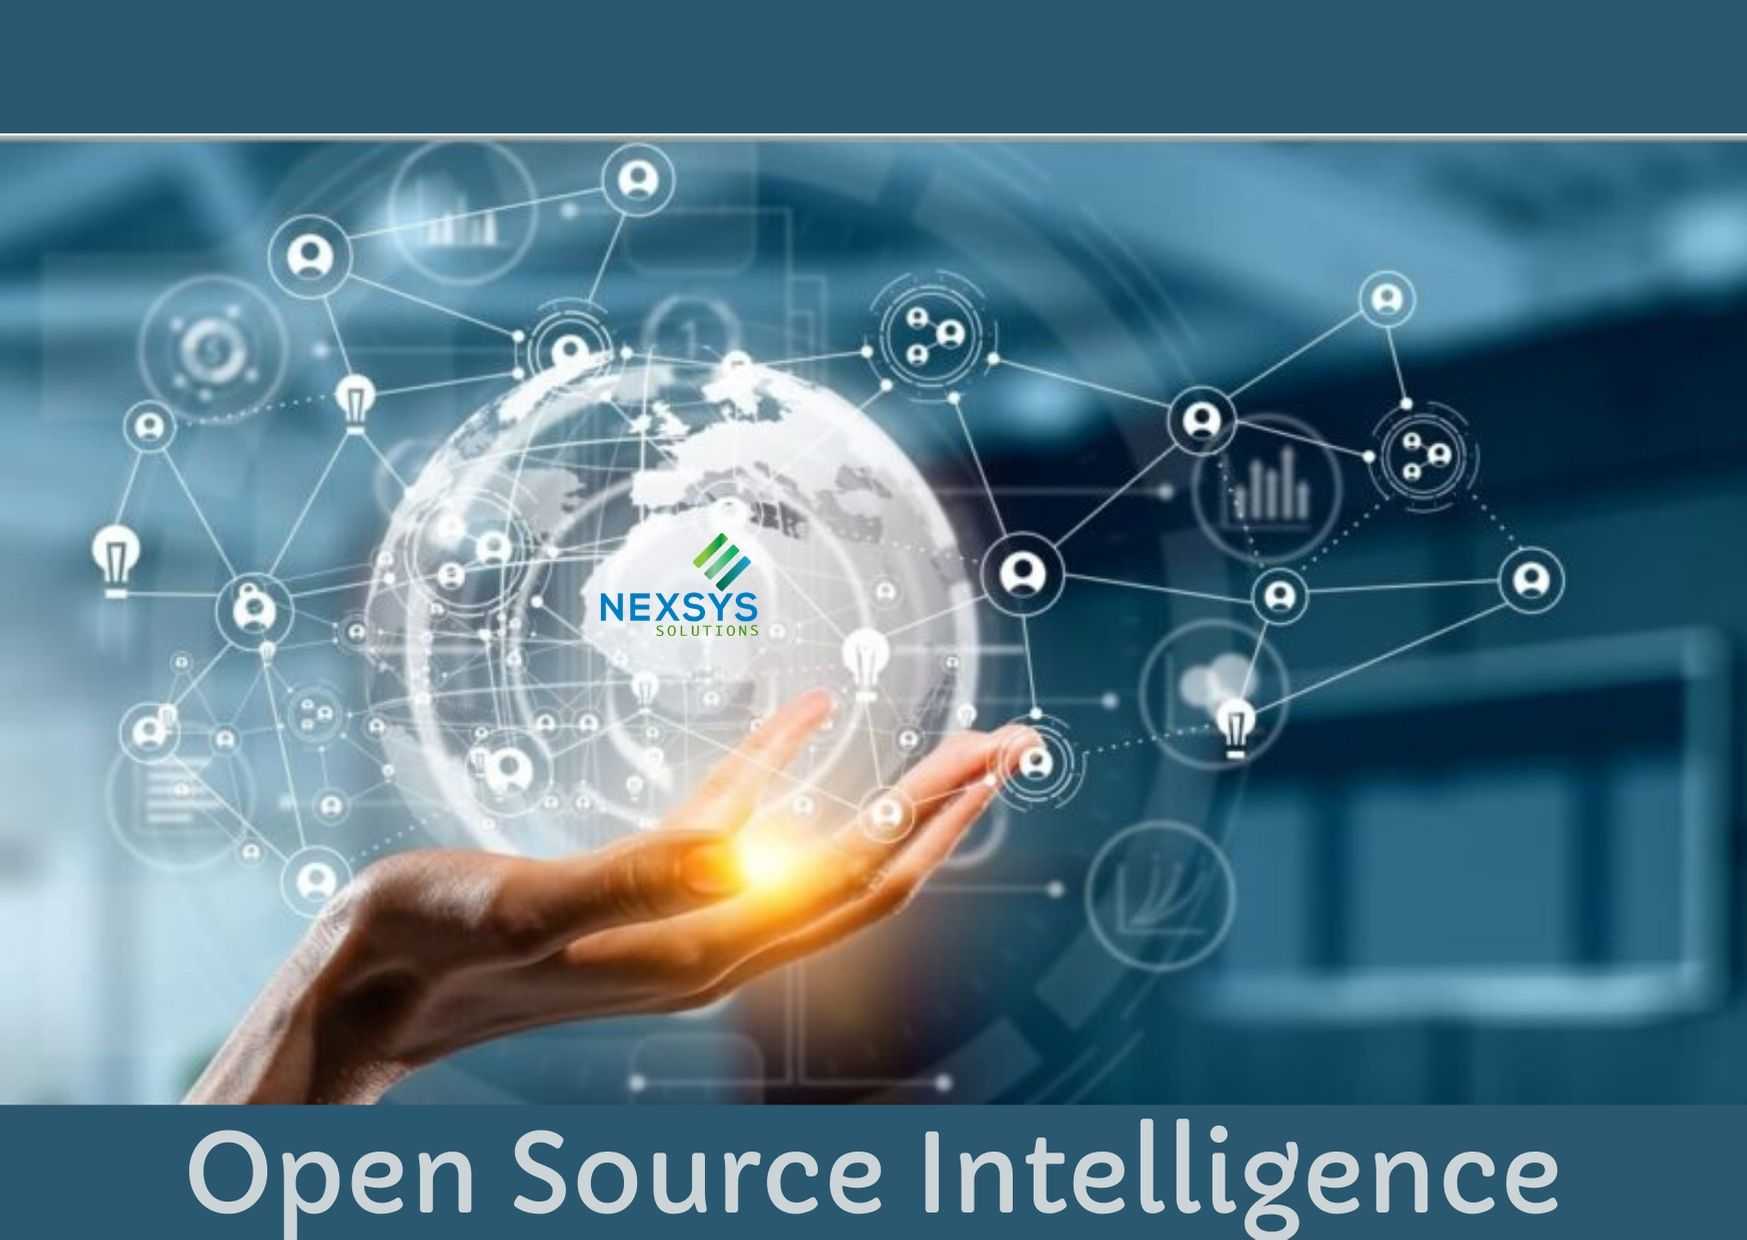 Open-Source Intelligence (OSINT)